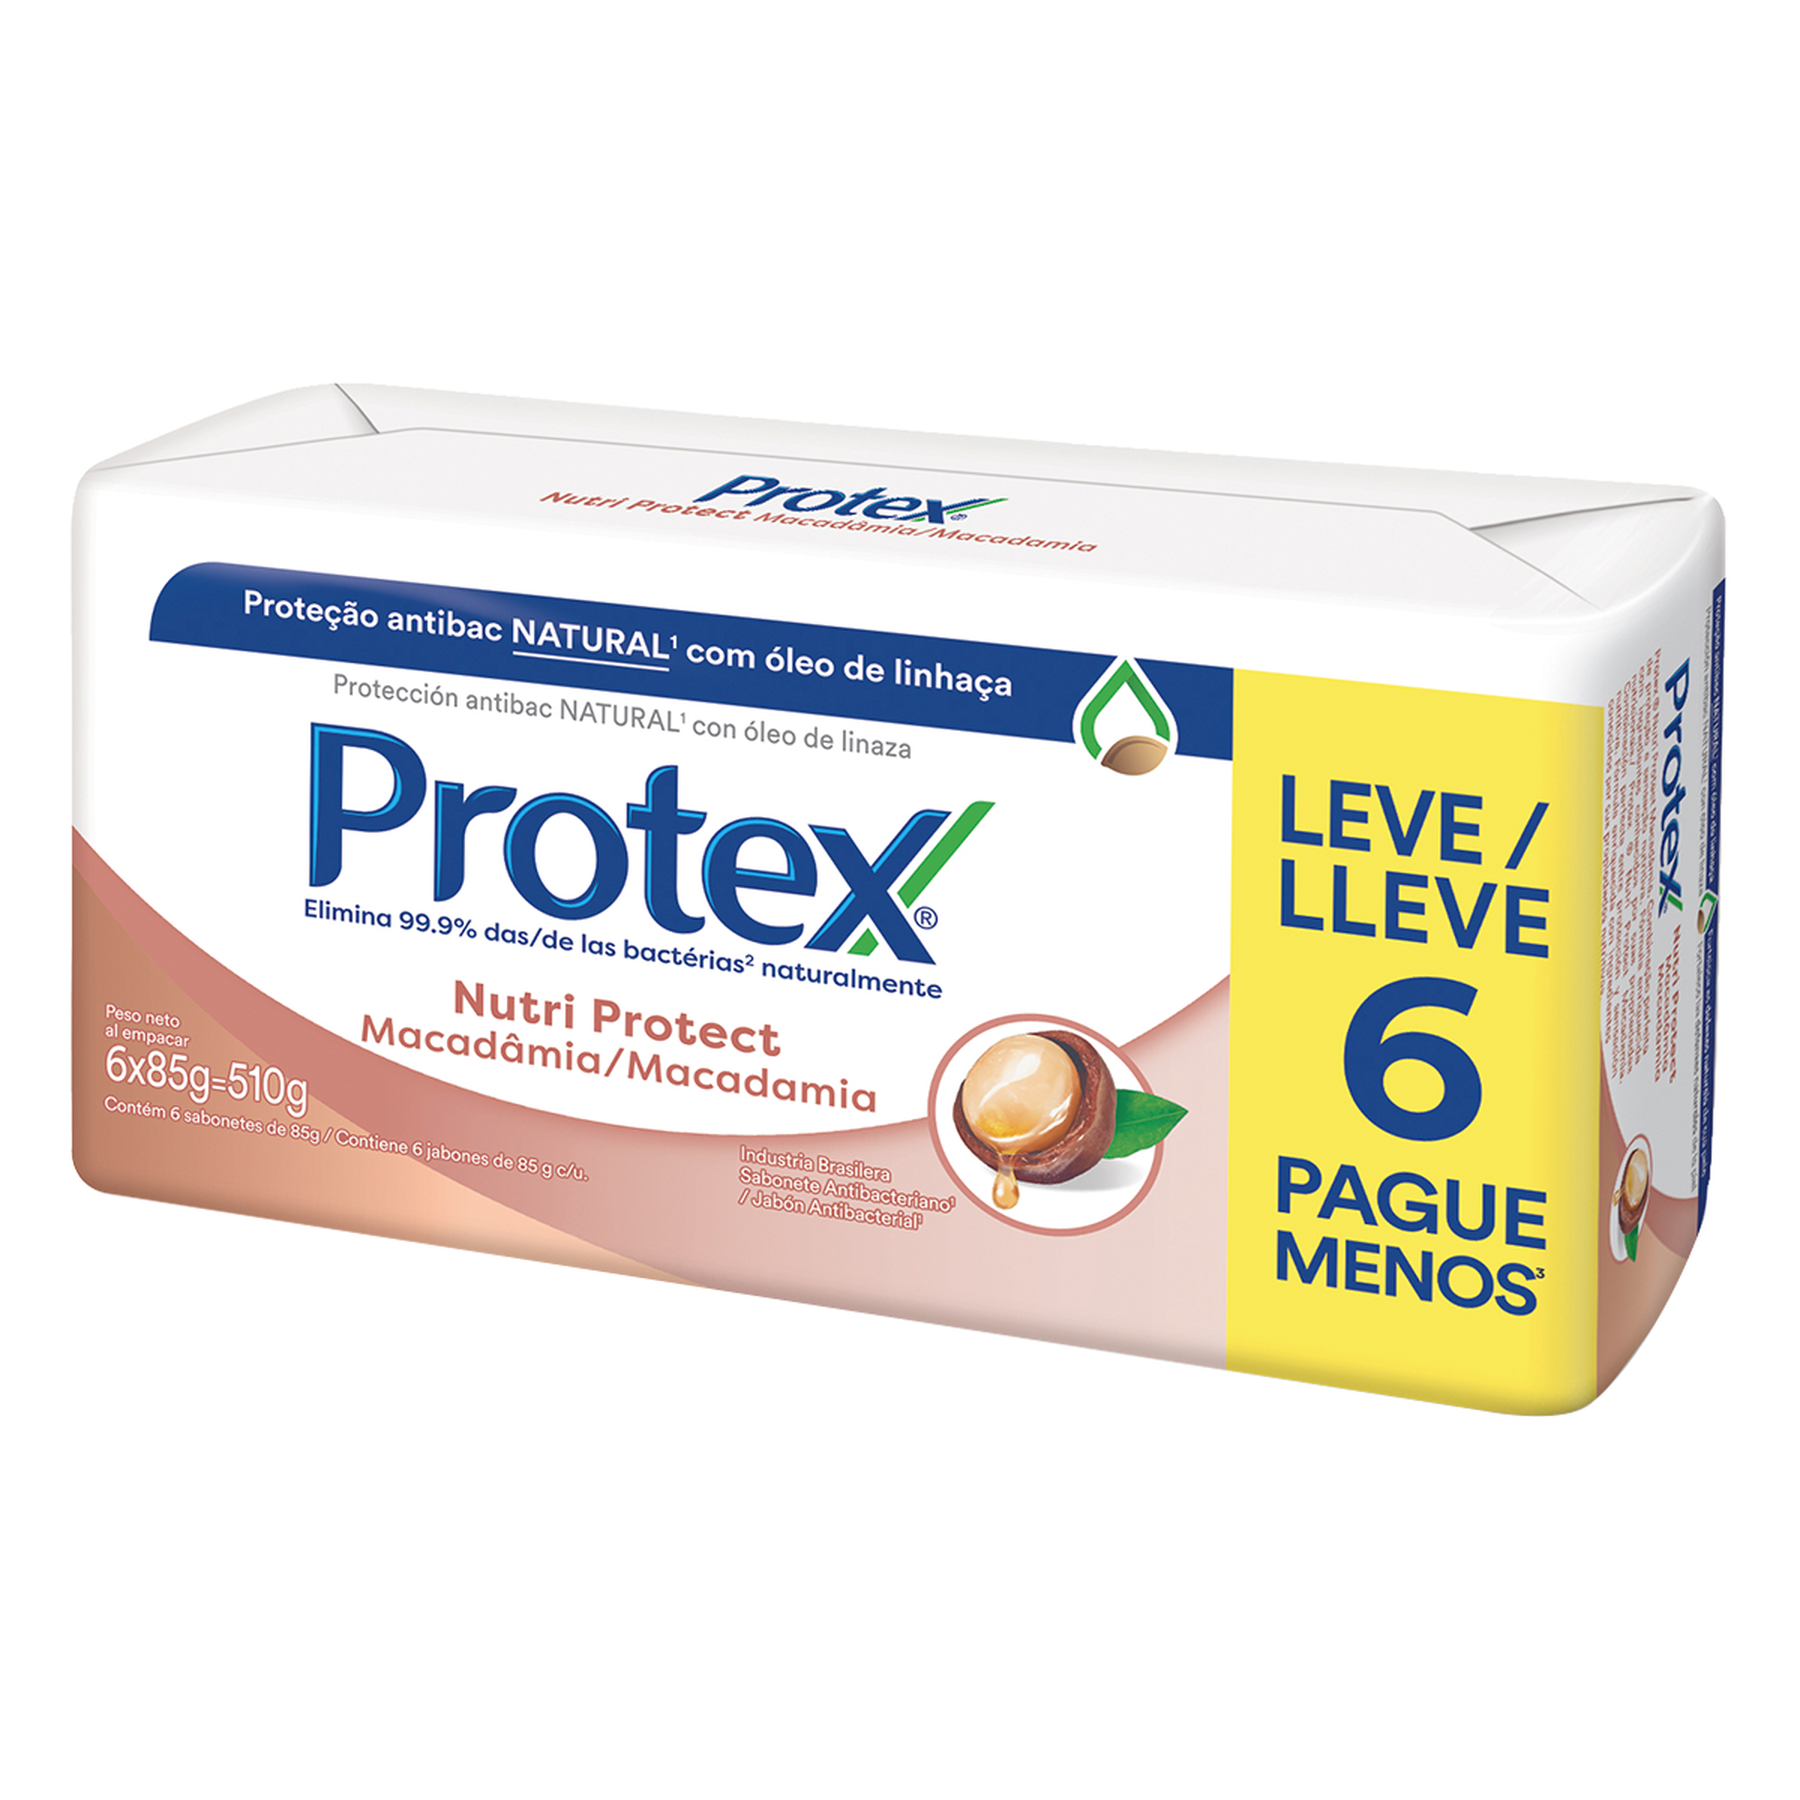 Sabonete em Barra Antibacteriano Nutri Protect Macadâmia Protex 6x85g - Embalagem Leve 6 Pague Menos